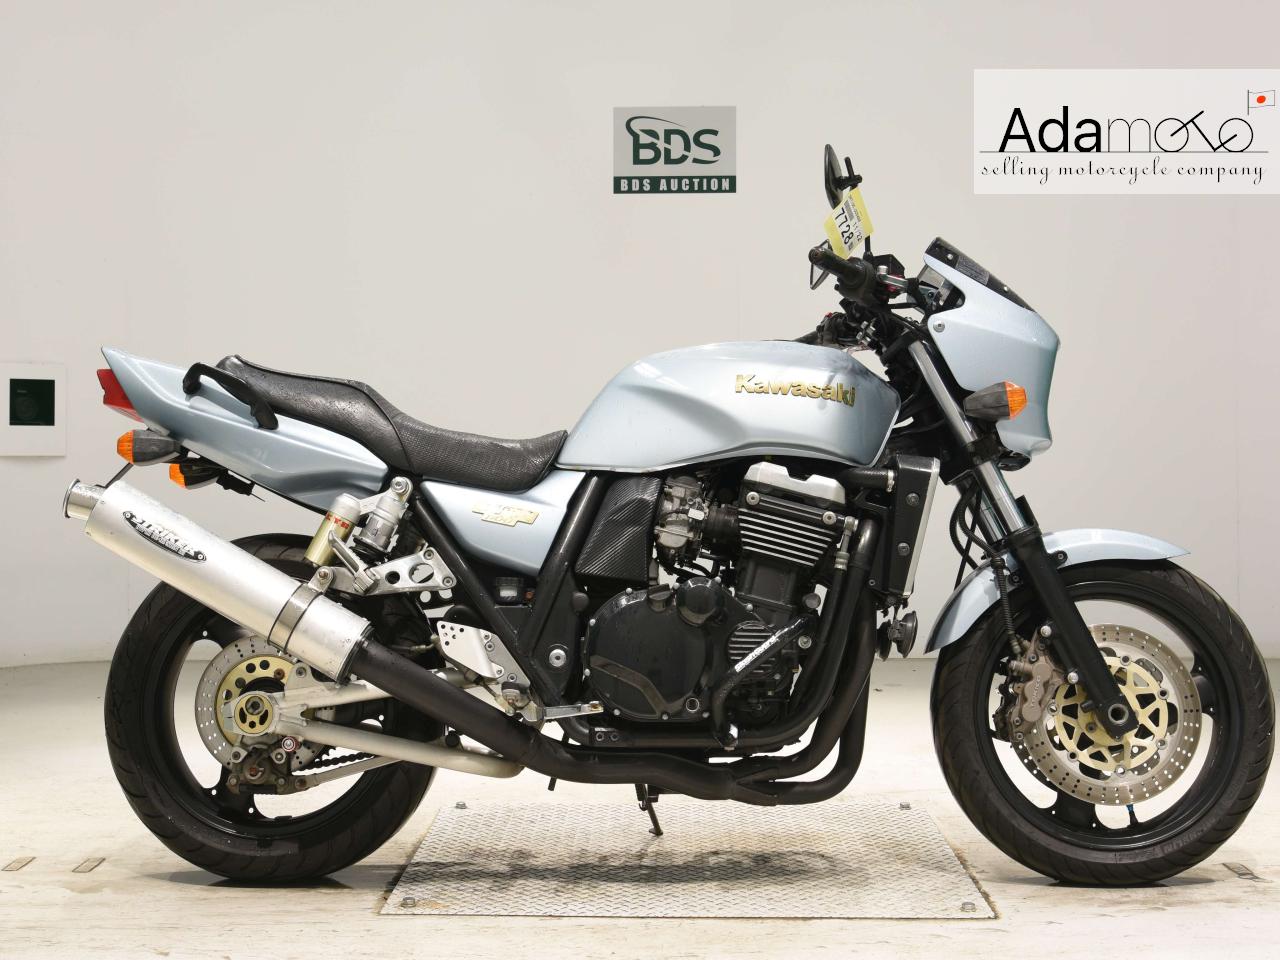 Kawasaki ZRX1100 - Adamoto - Motorcycles from Japan